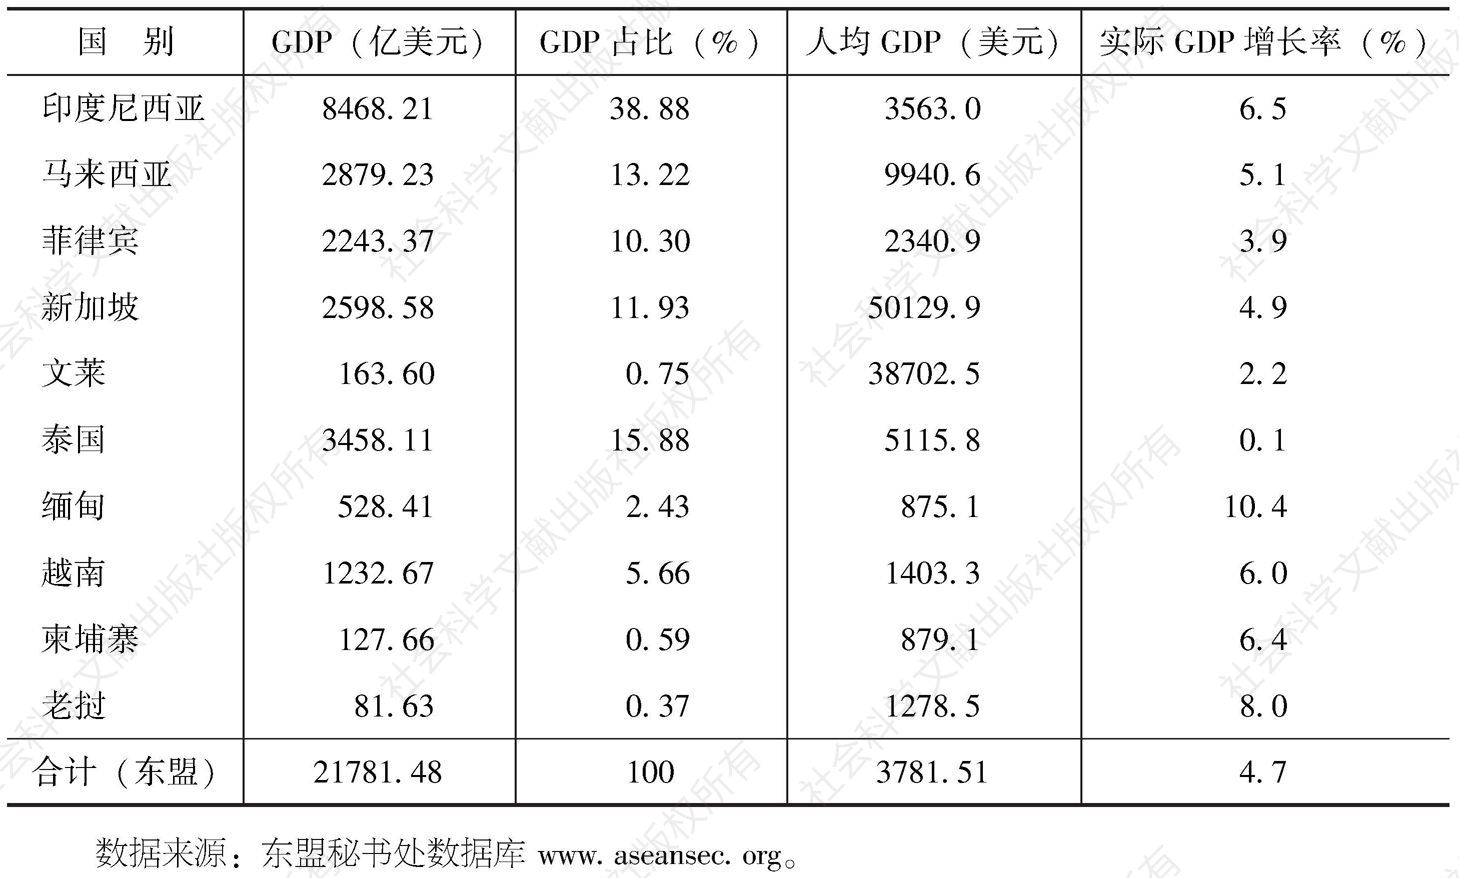 表1-1 2011年东盟主要经济指标值